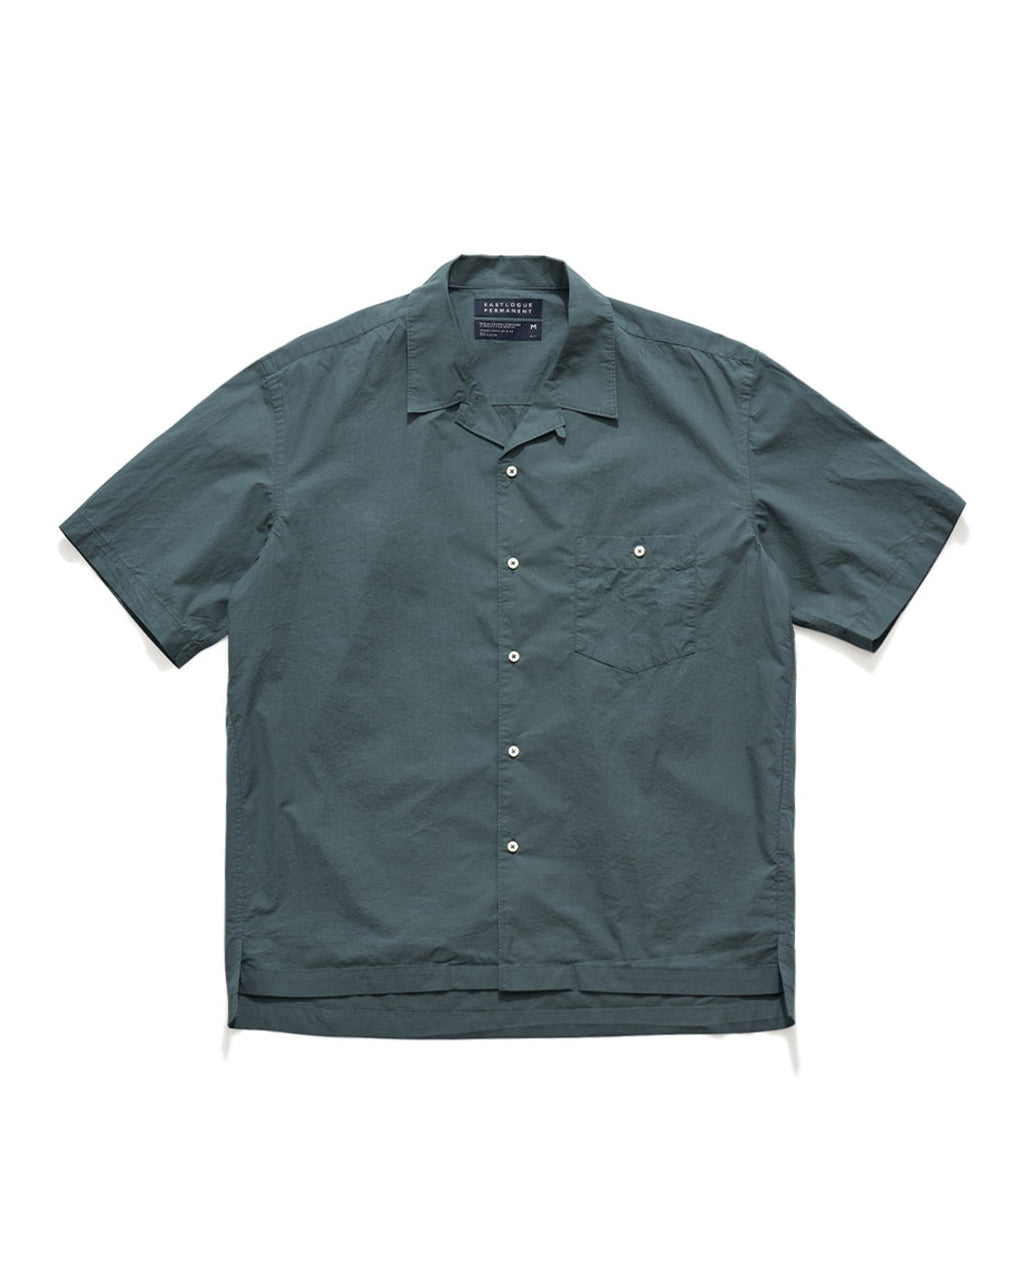 Eastlogue Blue/Green Relaxed Half Shirt